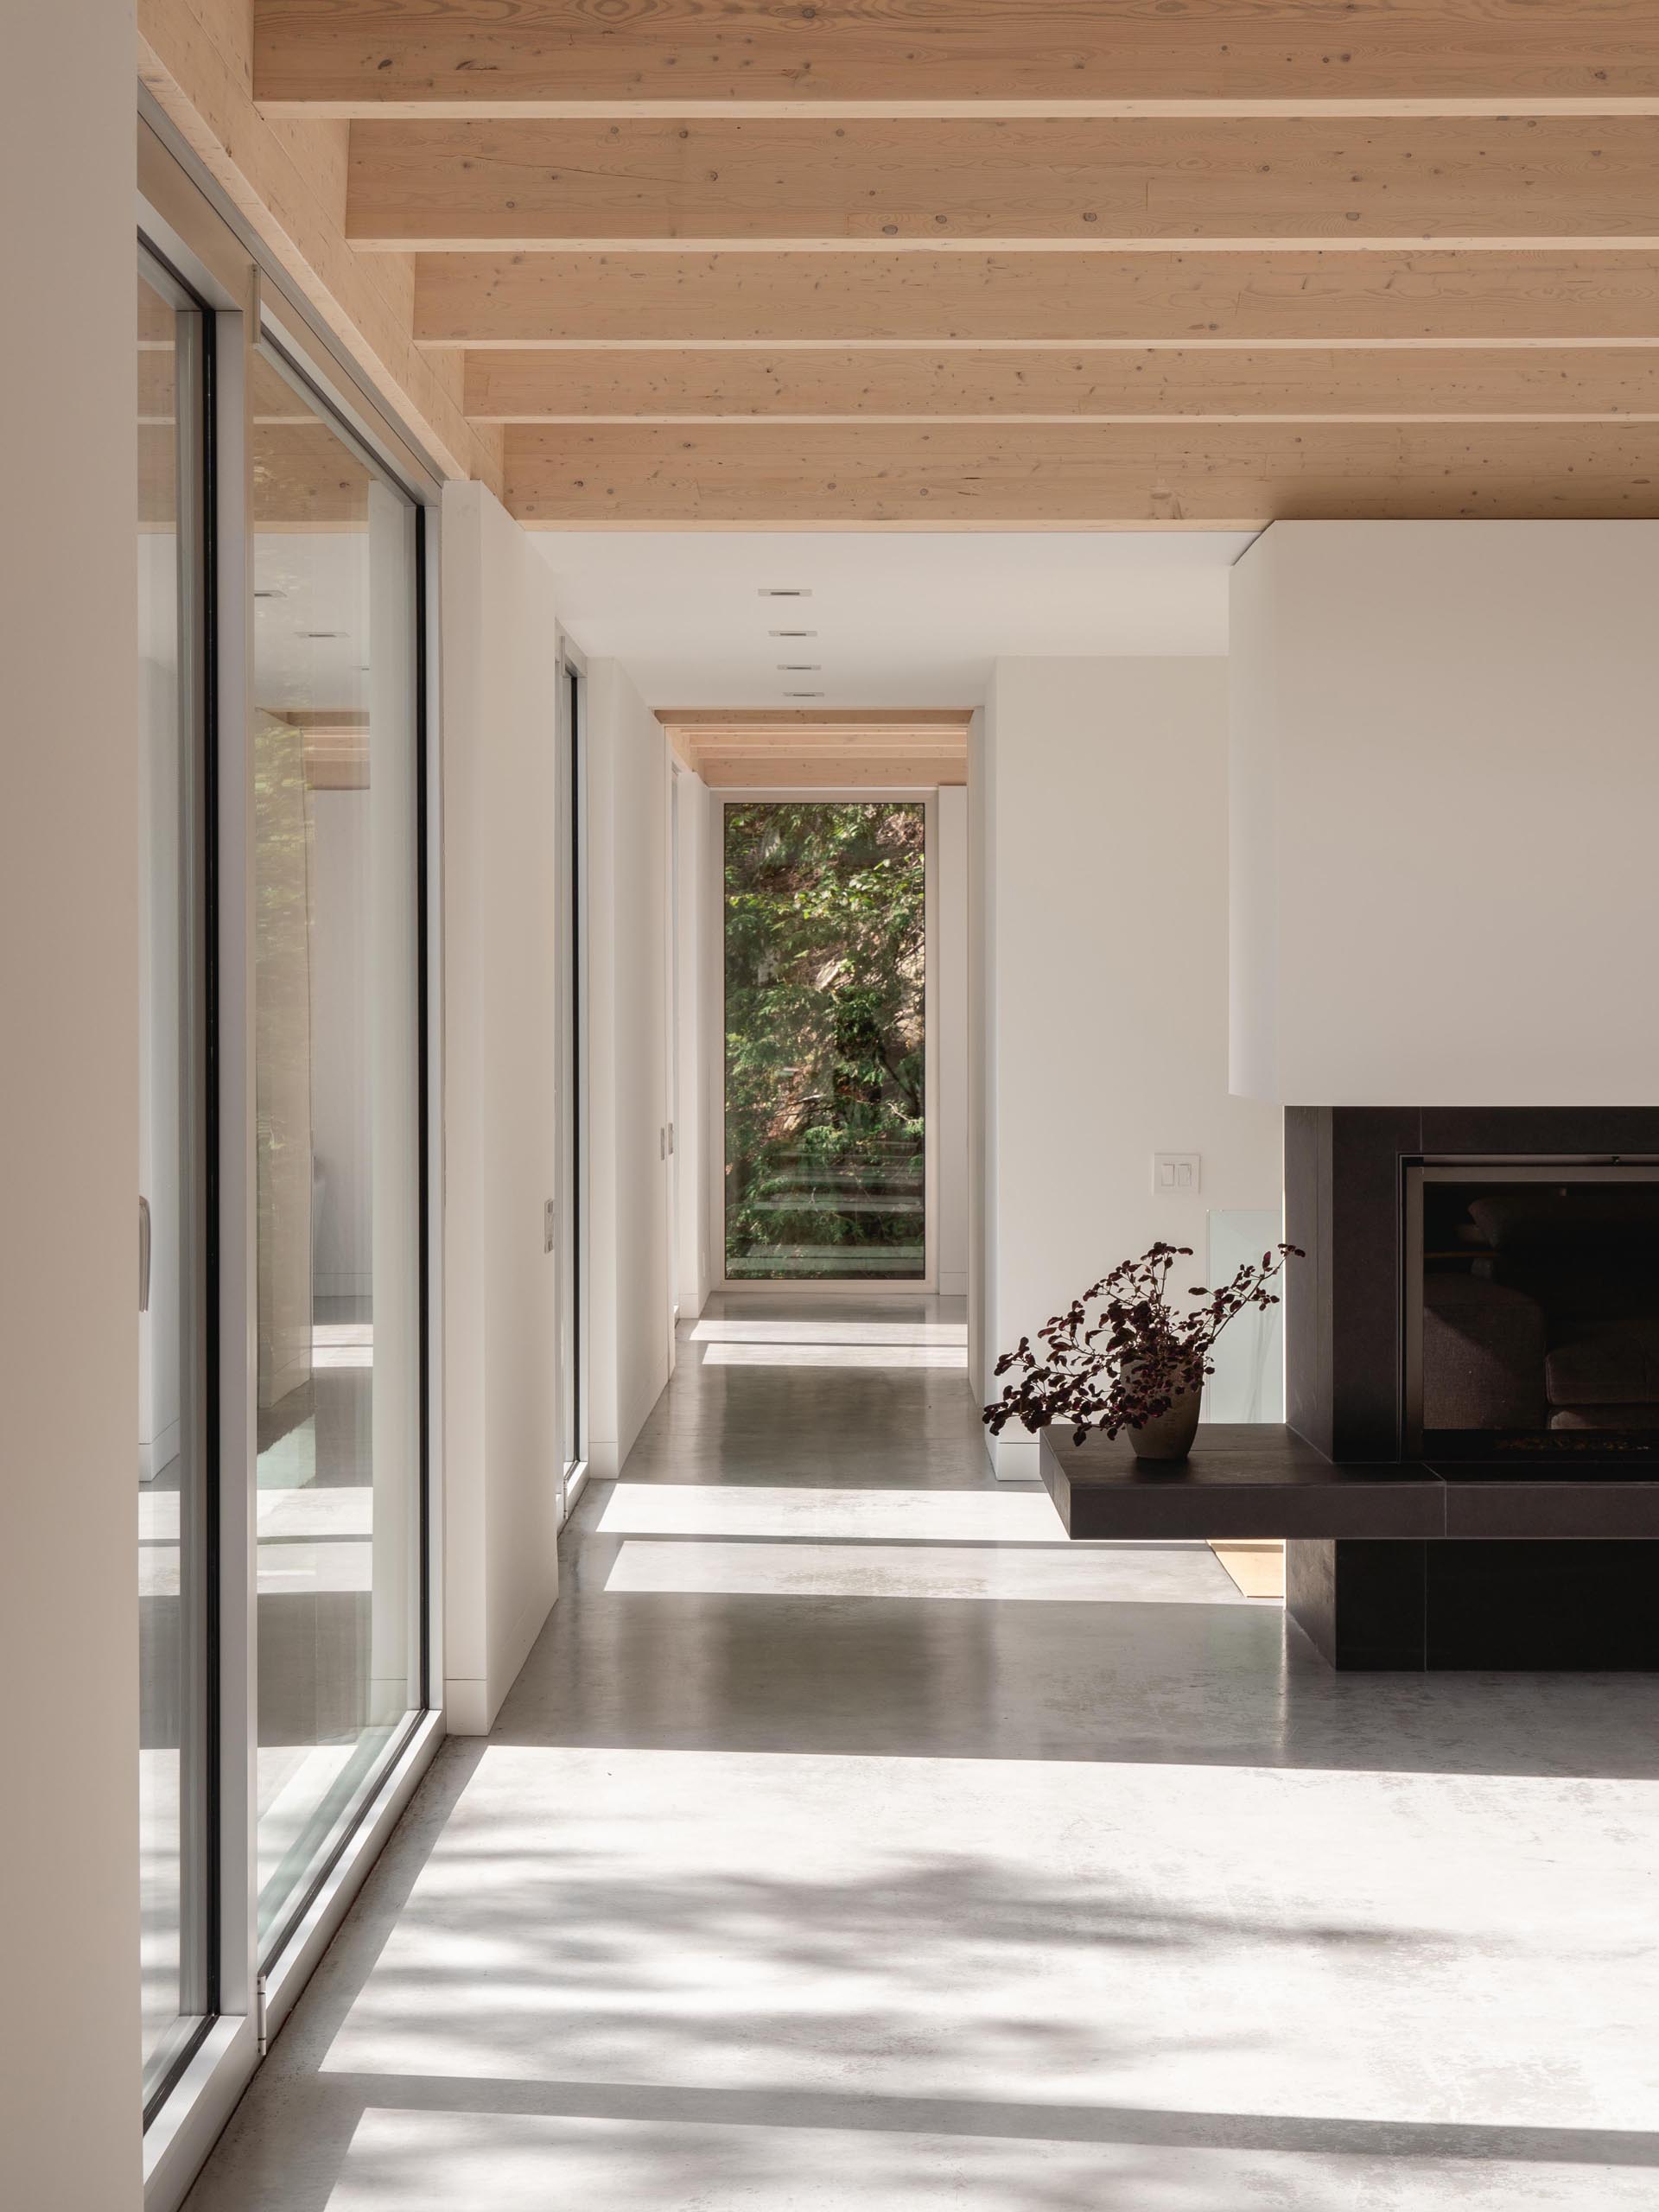 Полированный бетонный пол, гипсовые стены и окна из натурального алюминия гармонично сочетаются с деревом в этом современном доме.